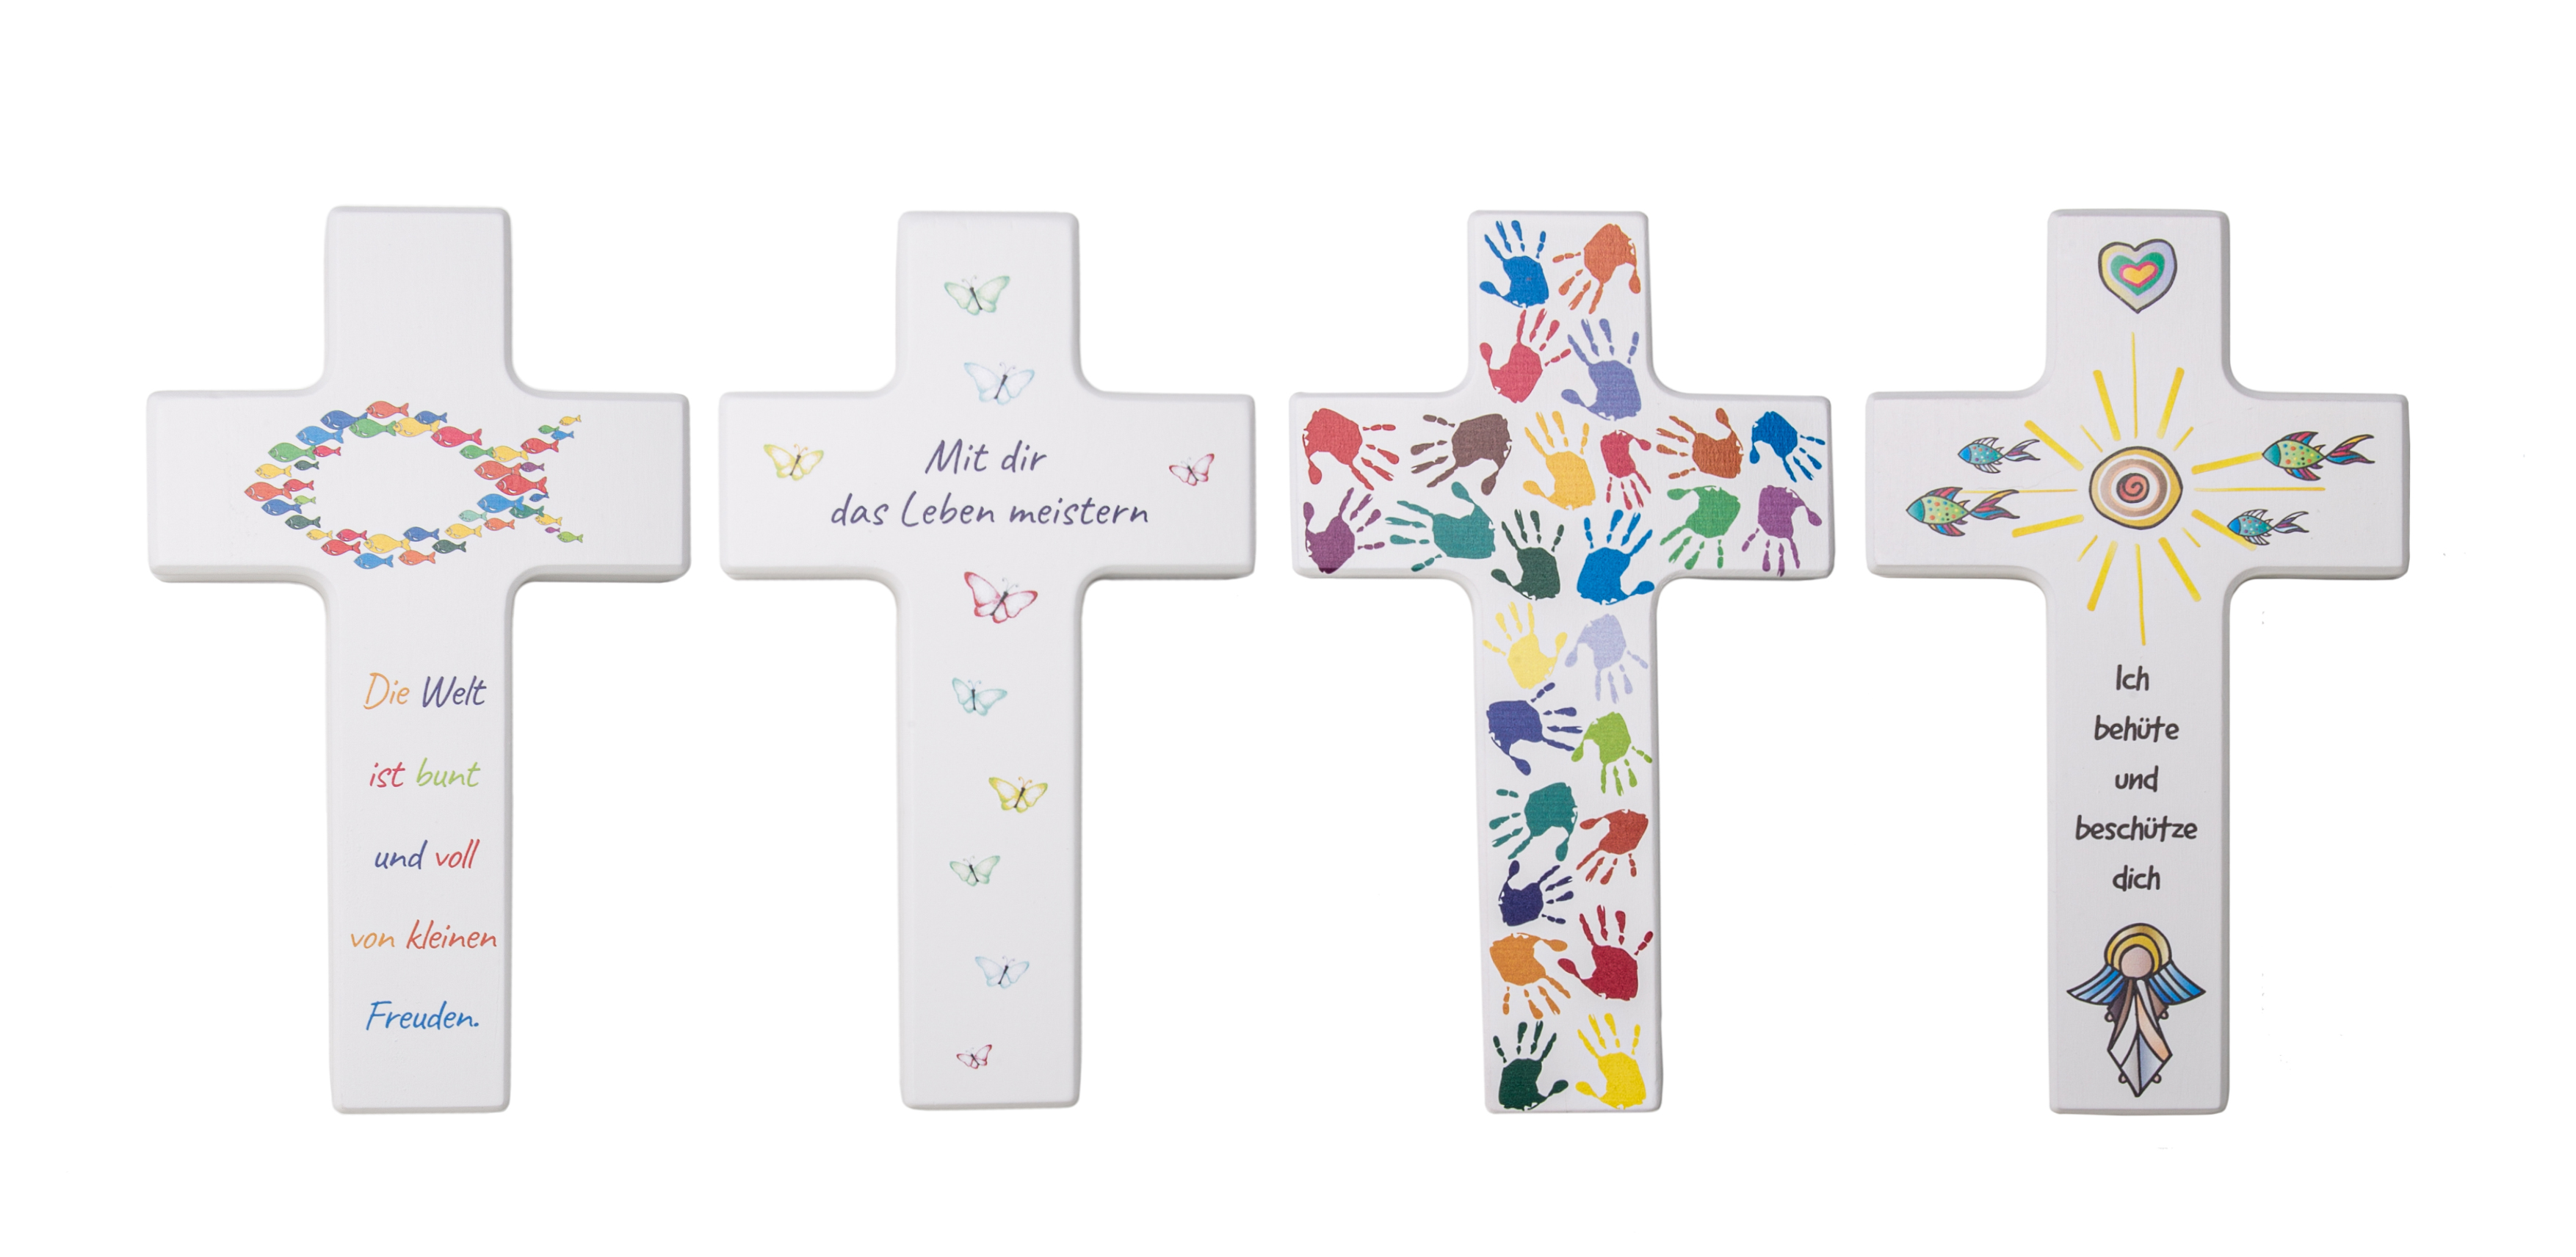 Kinderkreuz aus Holz mit Aufdruck "Die Welt ist bunt und voll von kleinen Freuden"12x20cm